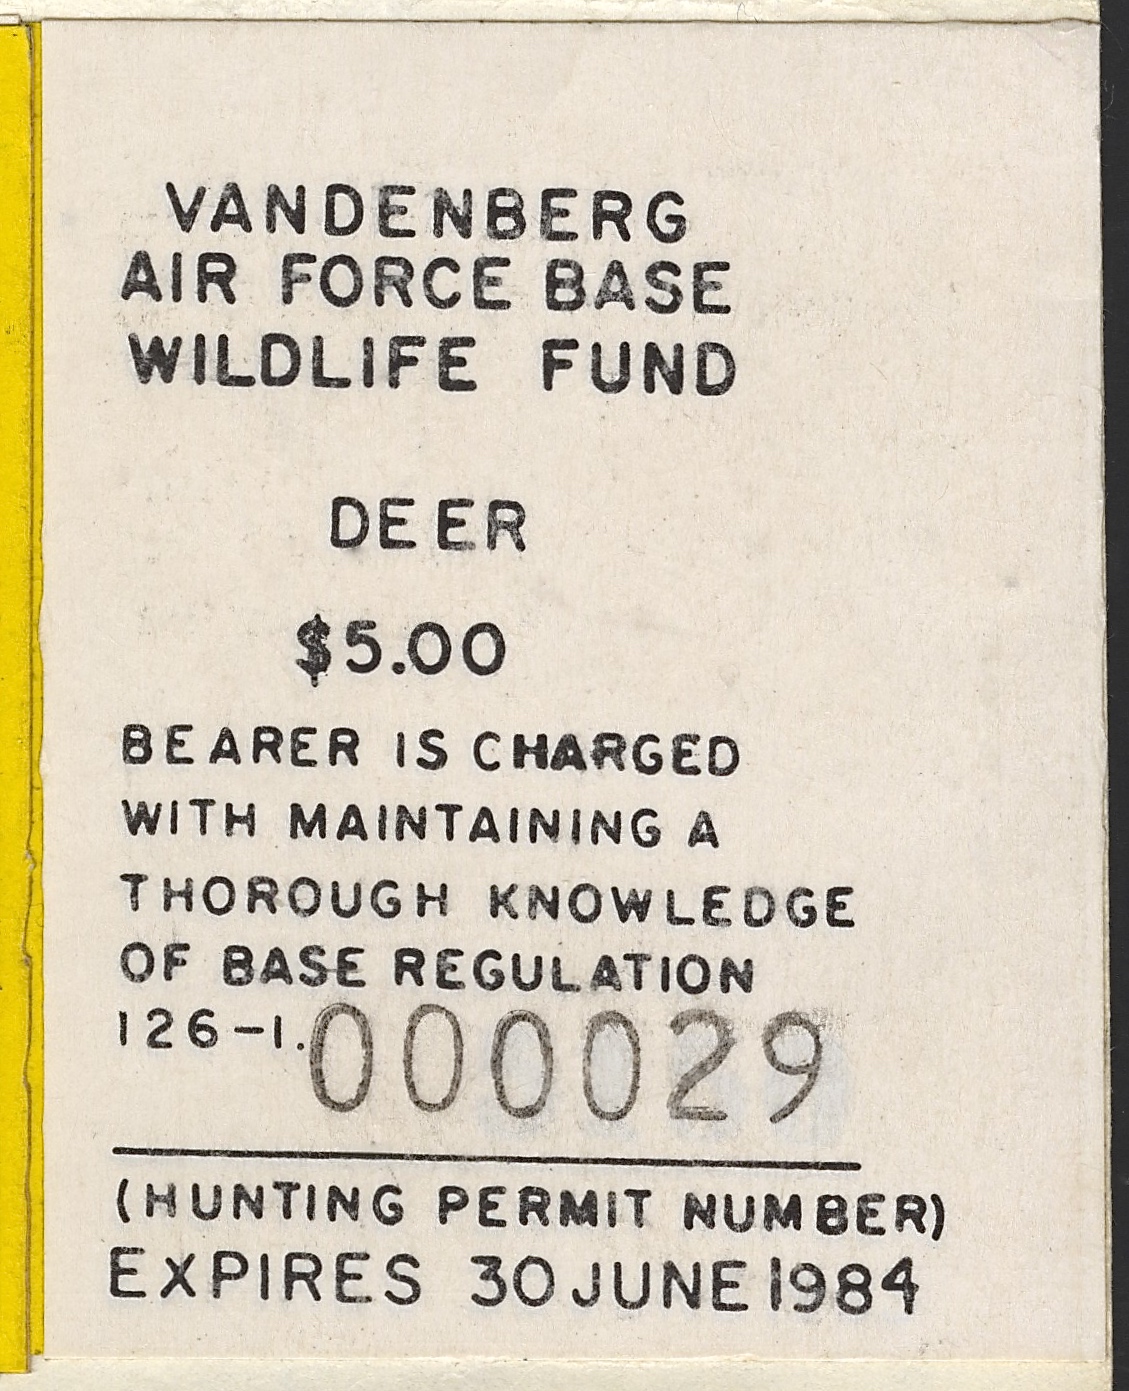 1983-84 VAFB Deer